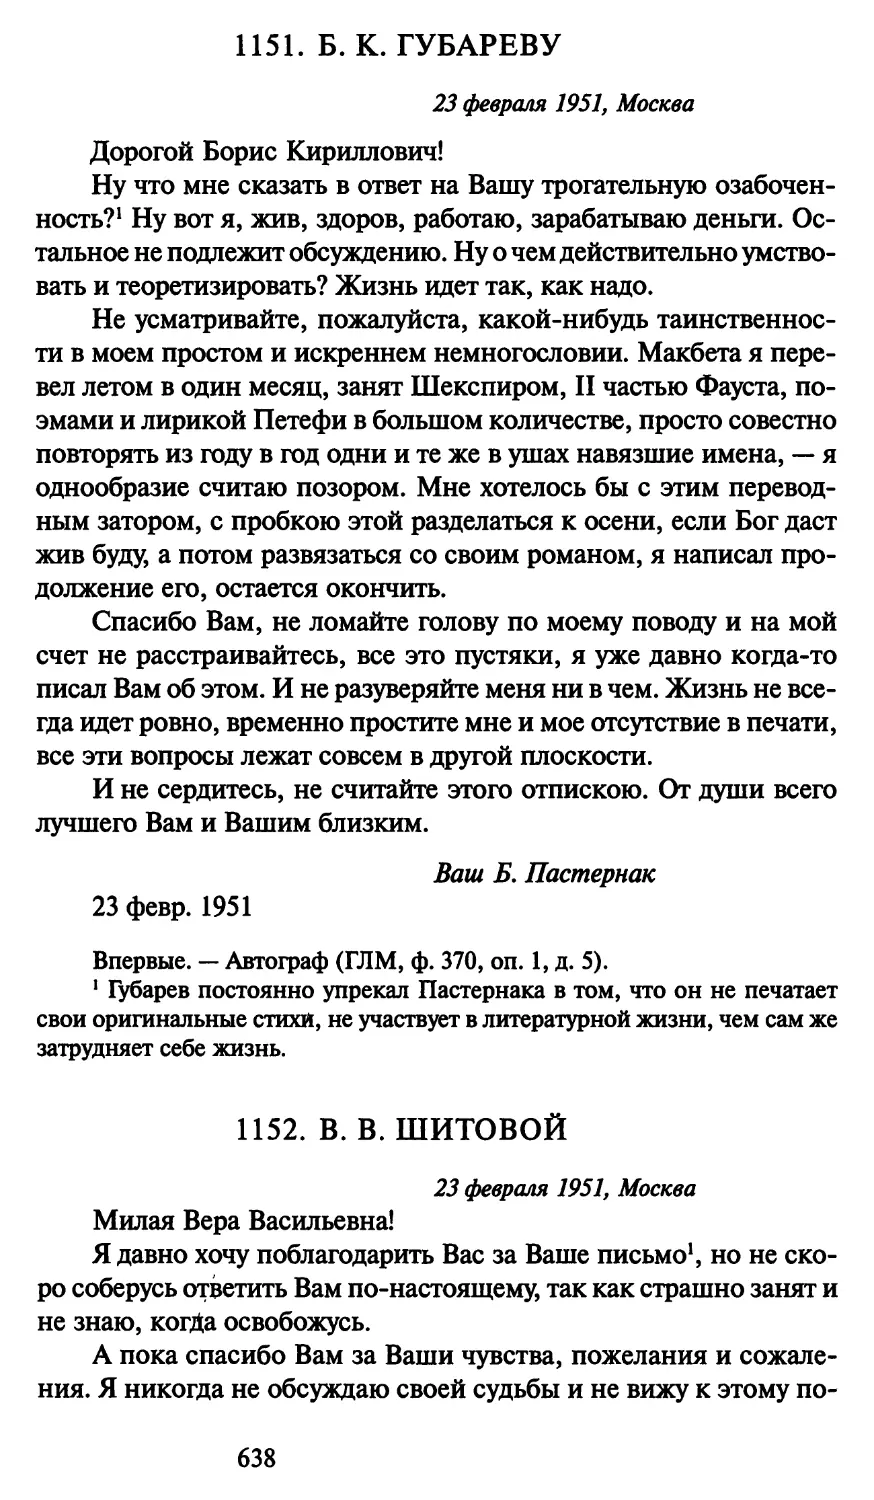 1152. В. В. Шитовой 23 февраля 1951